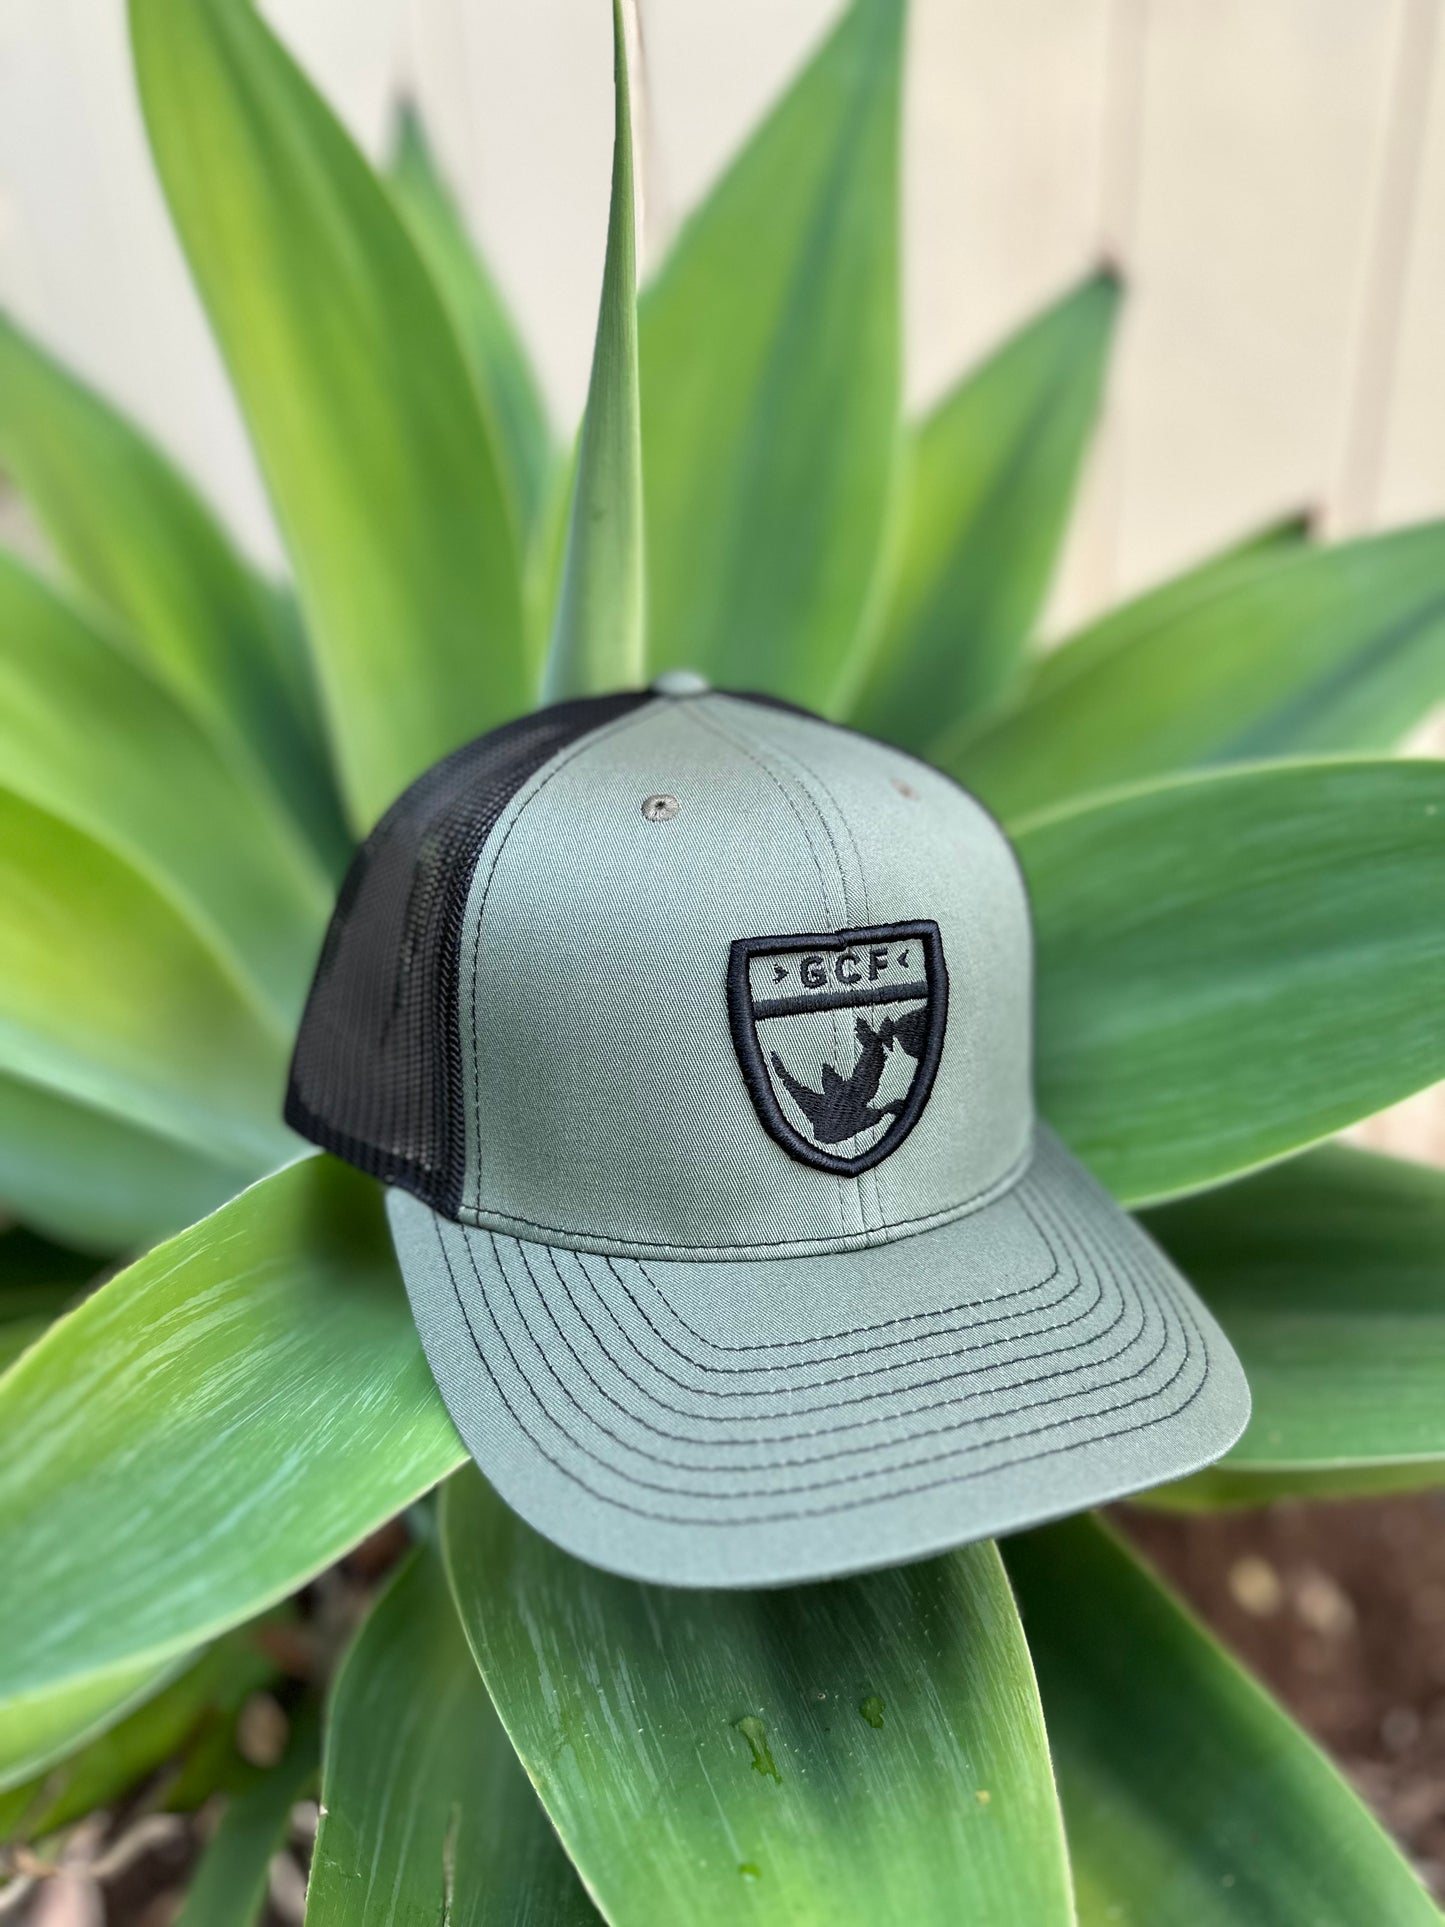 Limited Edition GCF K9-Rhino Shield Hat